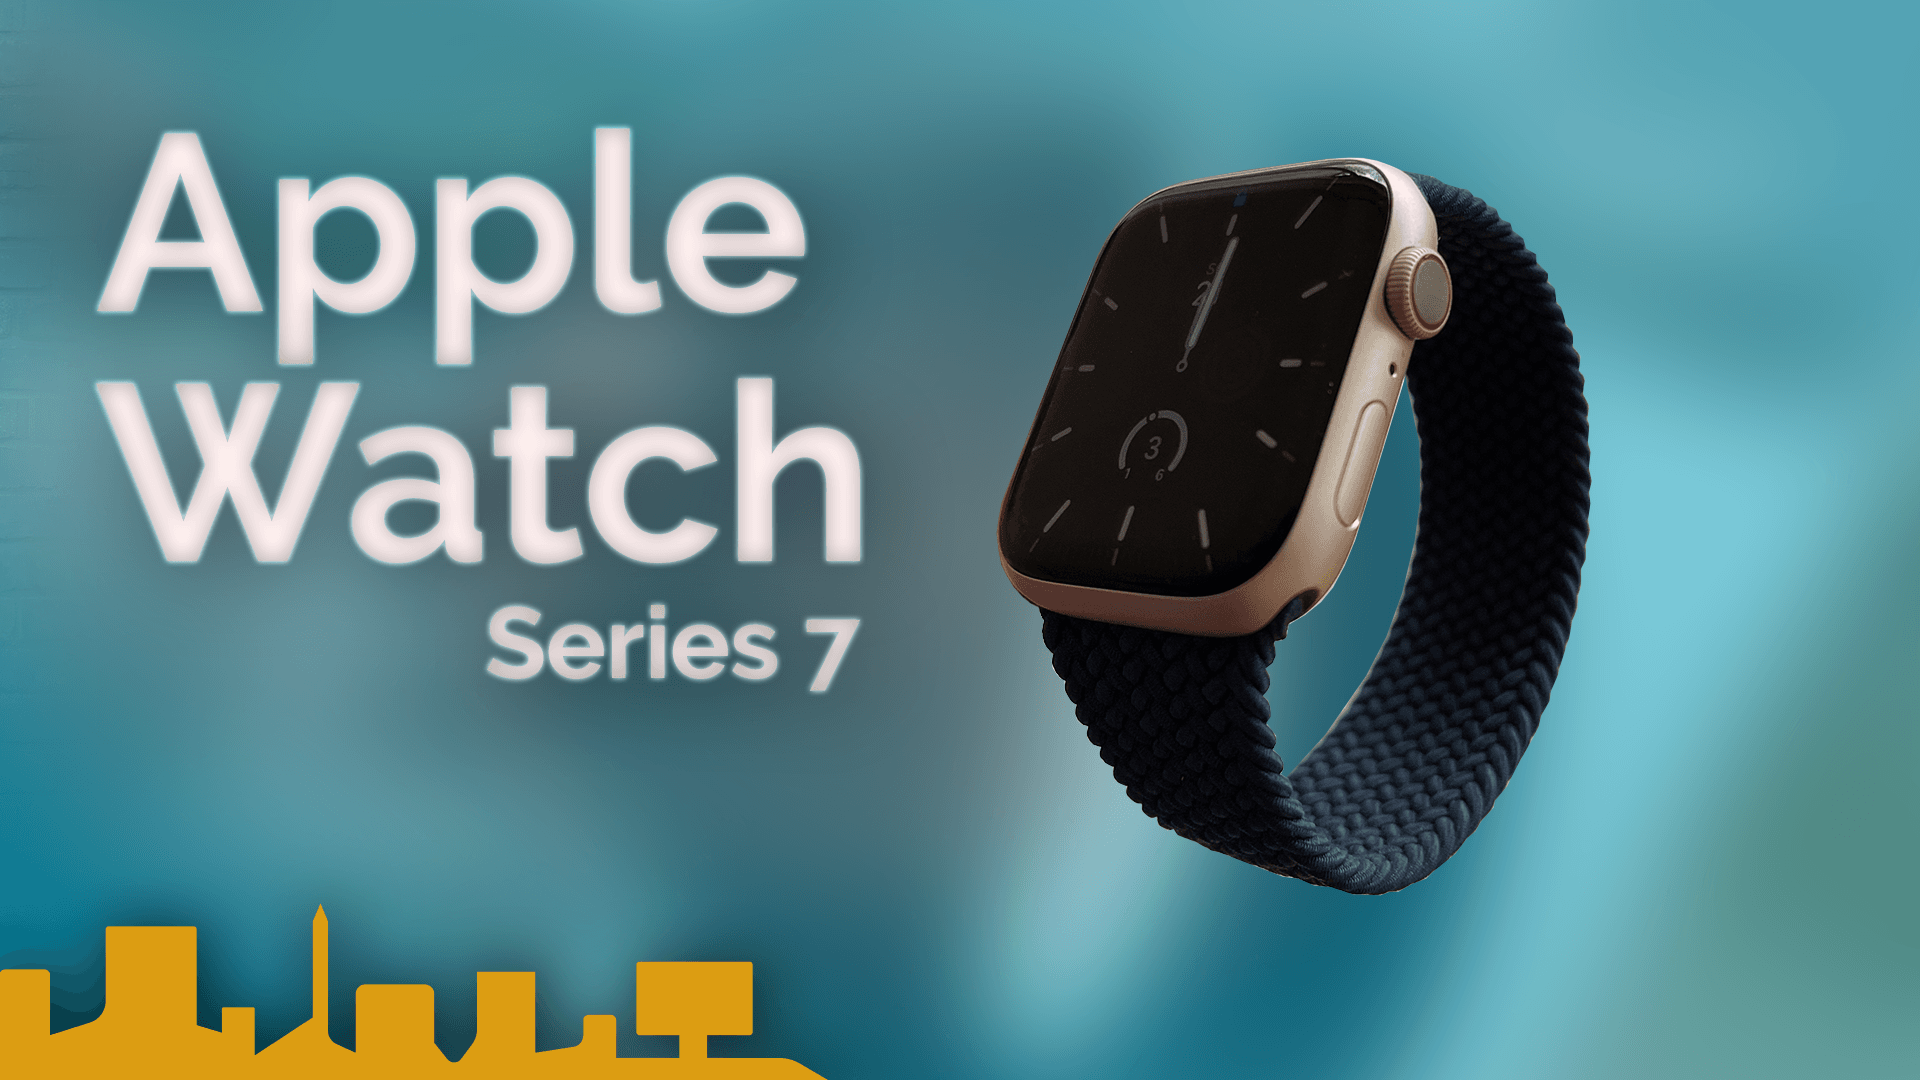 Immer noch die beste Smartwatch? Apple Watch Series 7 im Langzeittest!